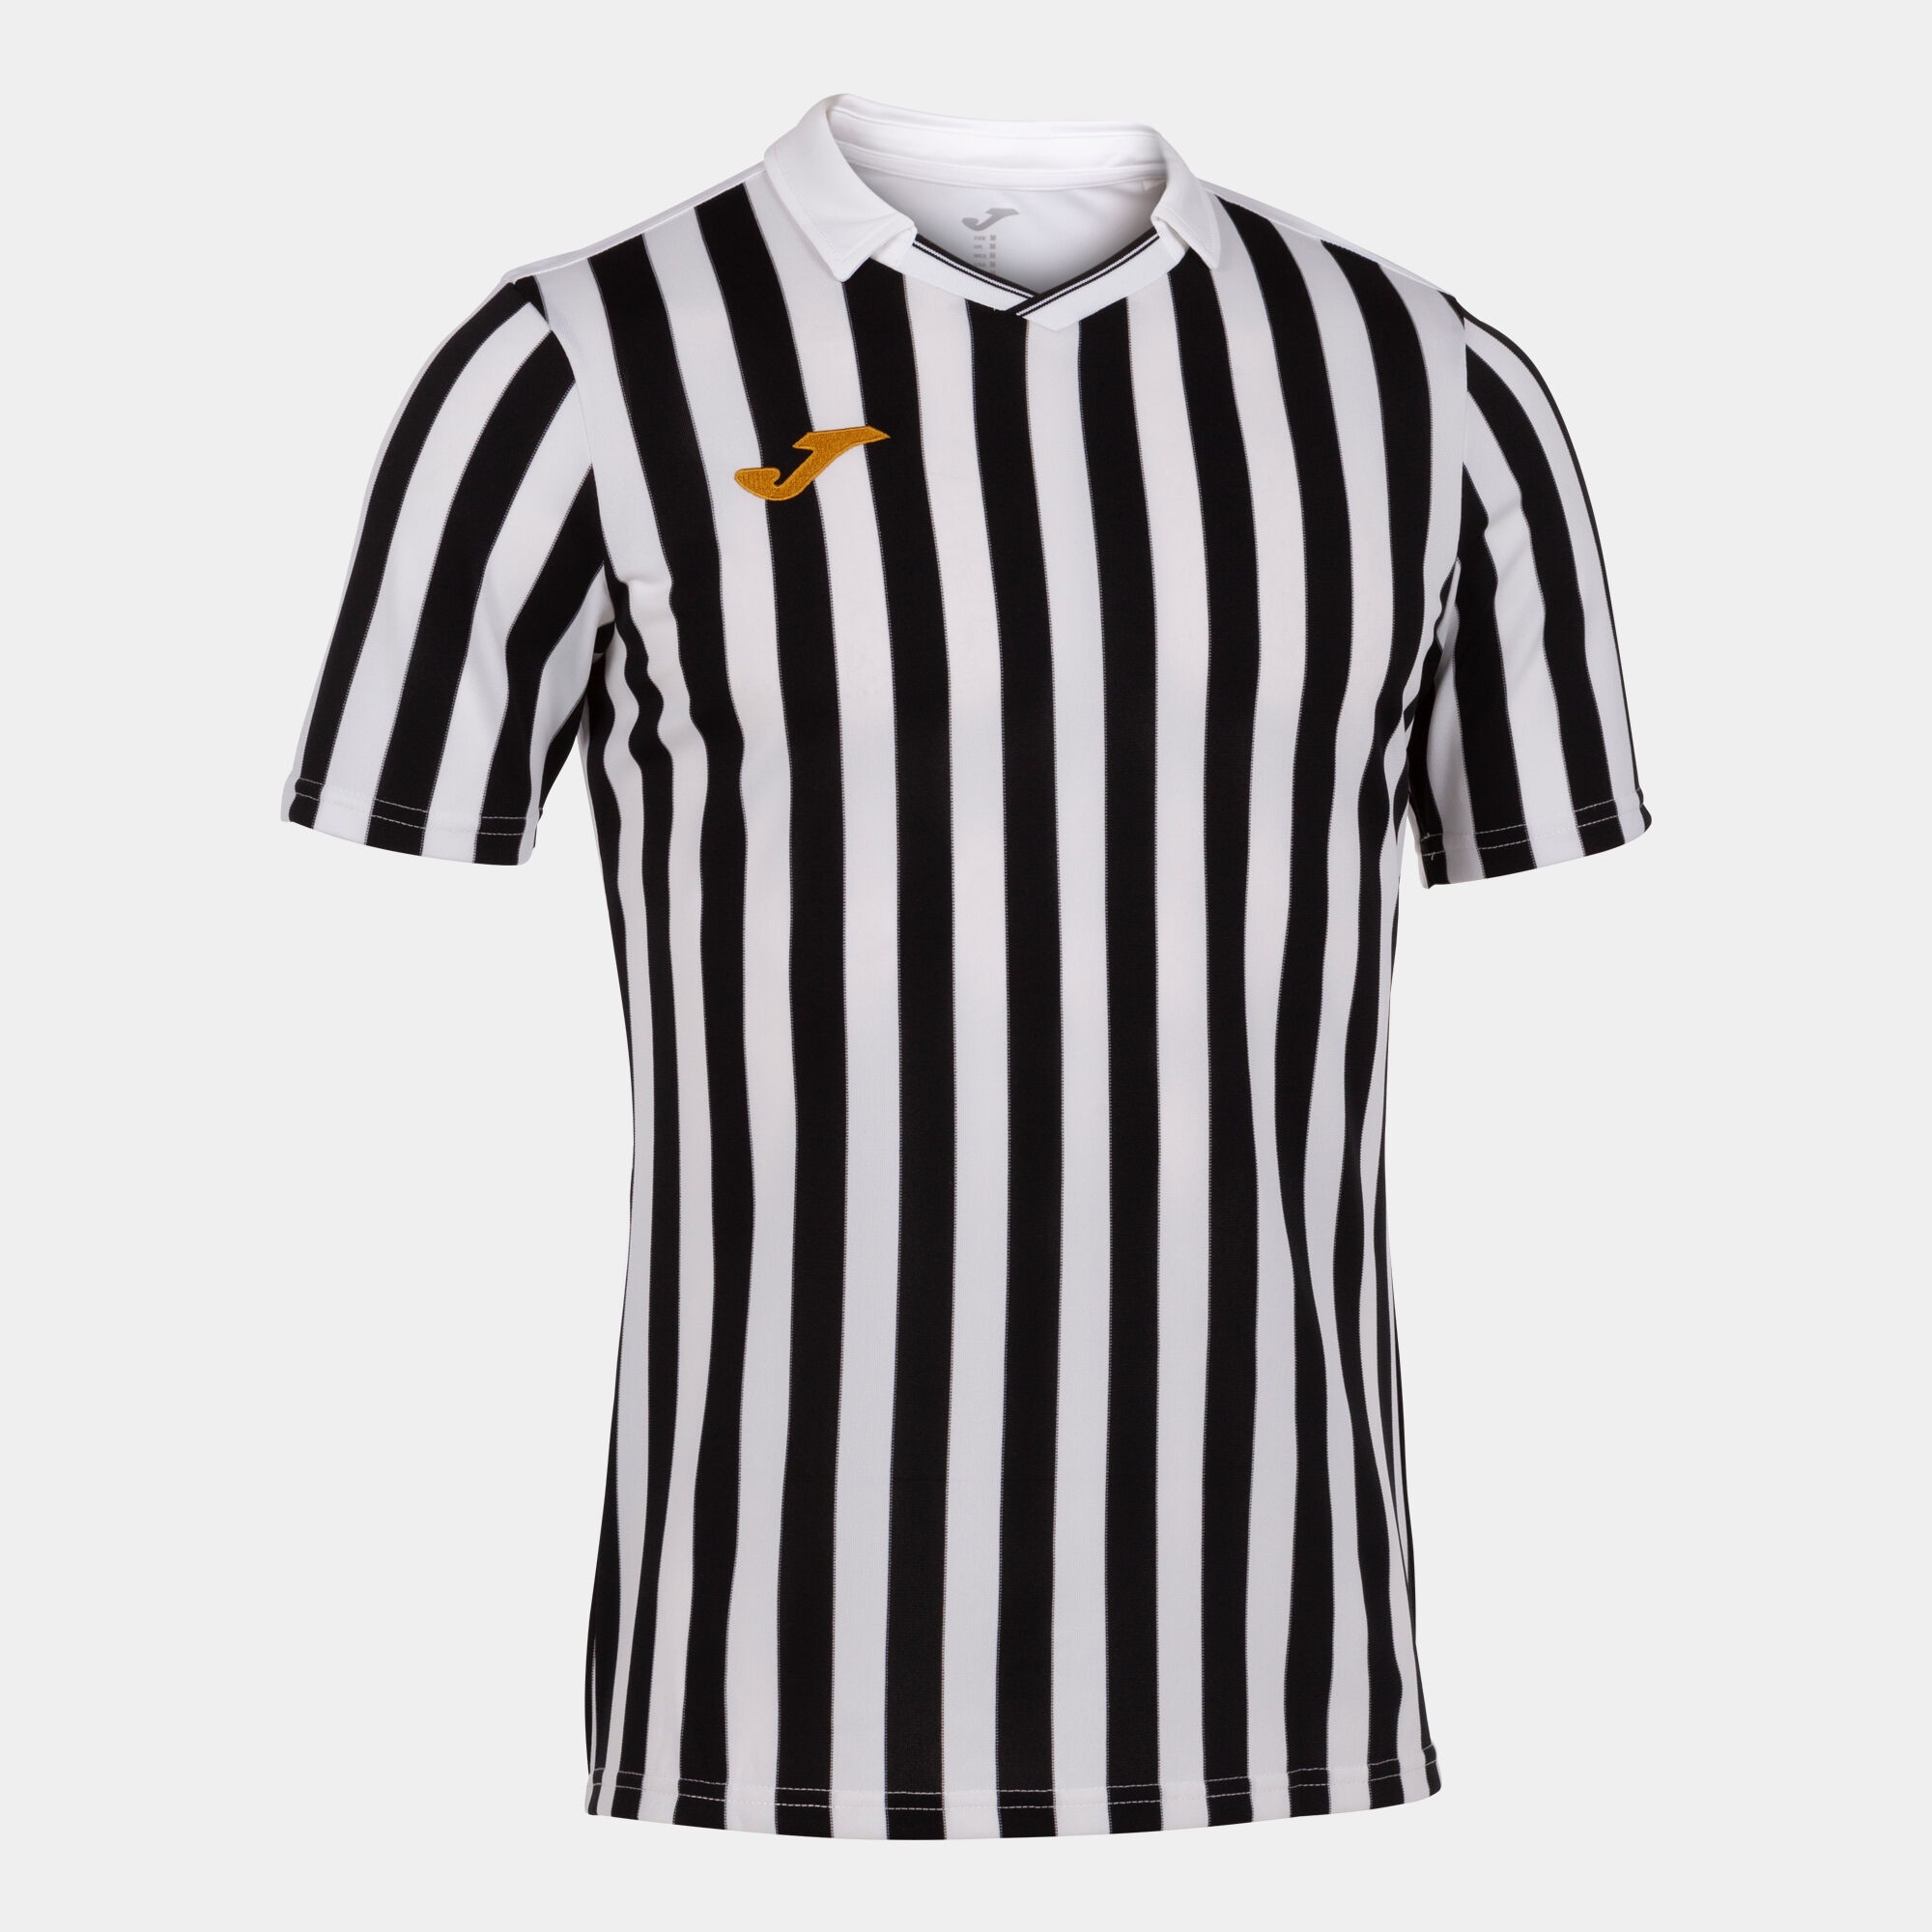 Koszulka z krótkim rękawem mężczyźni Copa II bialy czarny